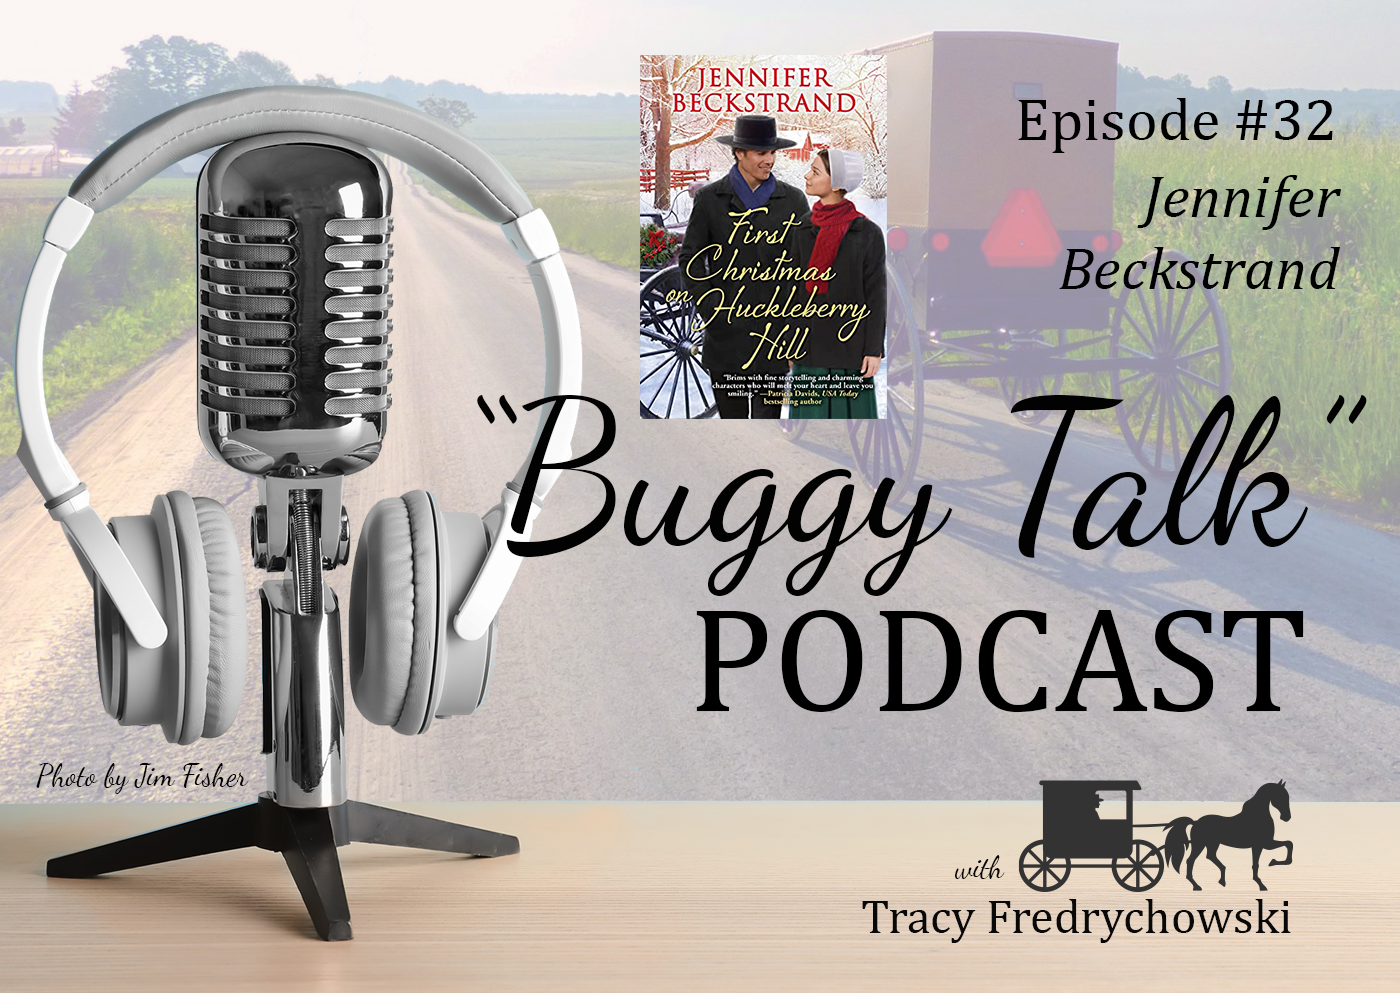 Buggy Talk with Tracy Fredrychowski